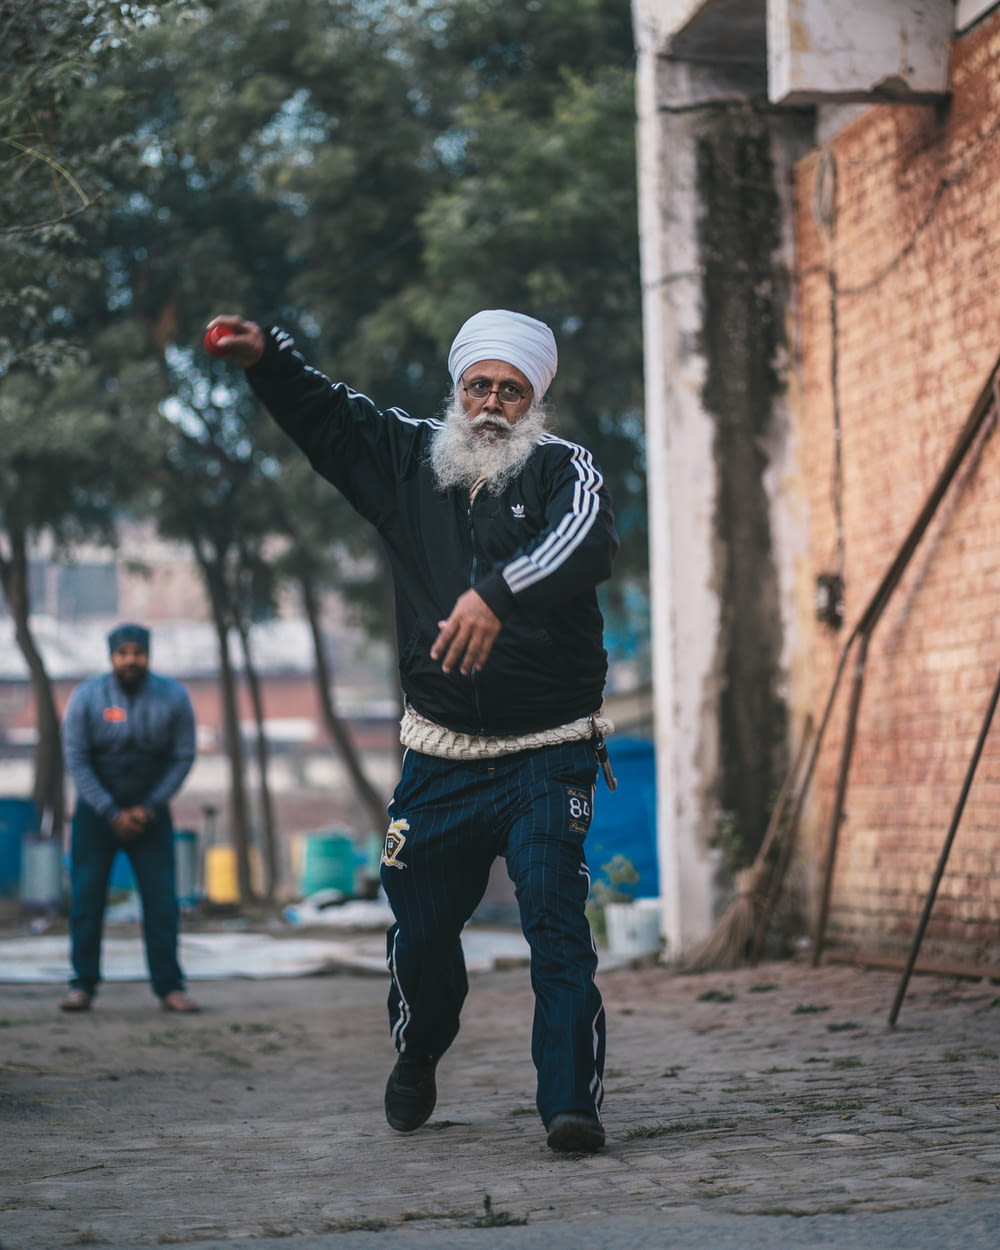 a man in a turban throws a frisbee